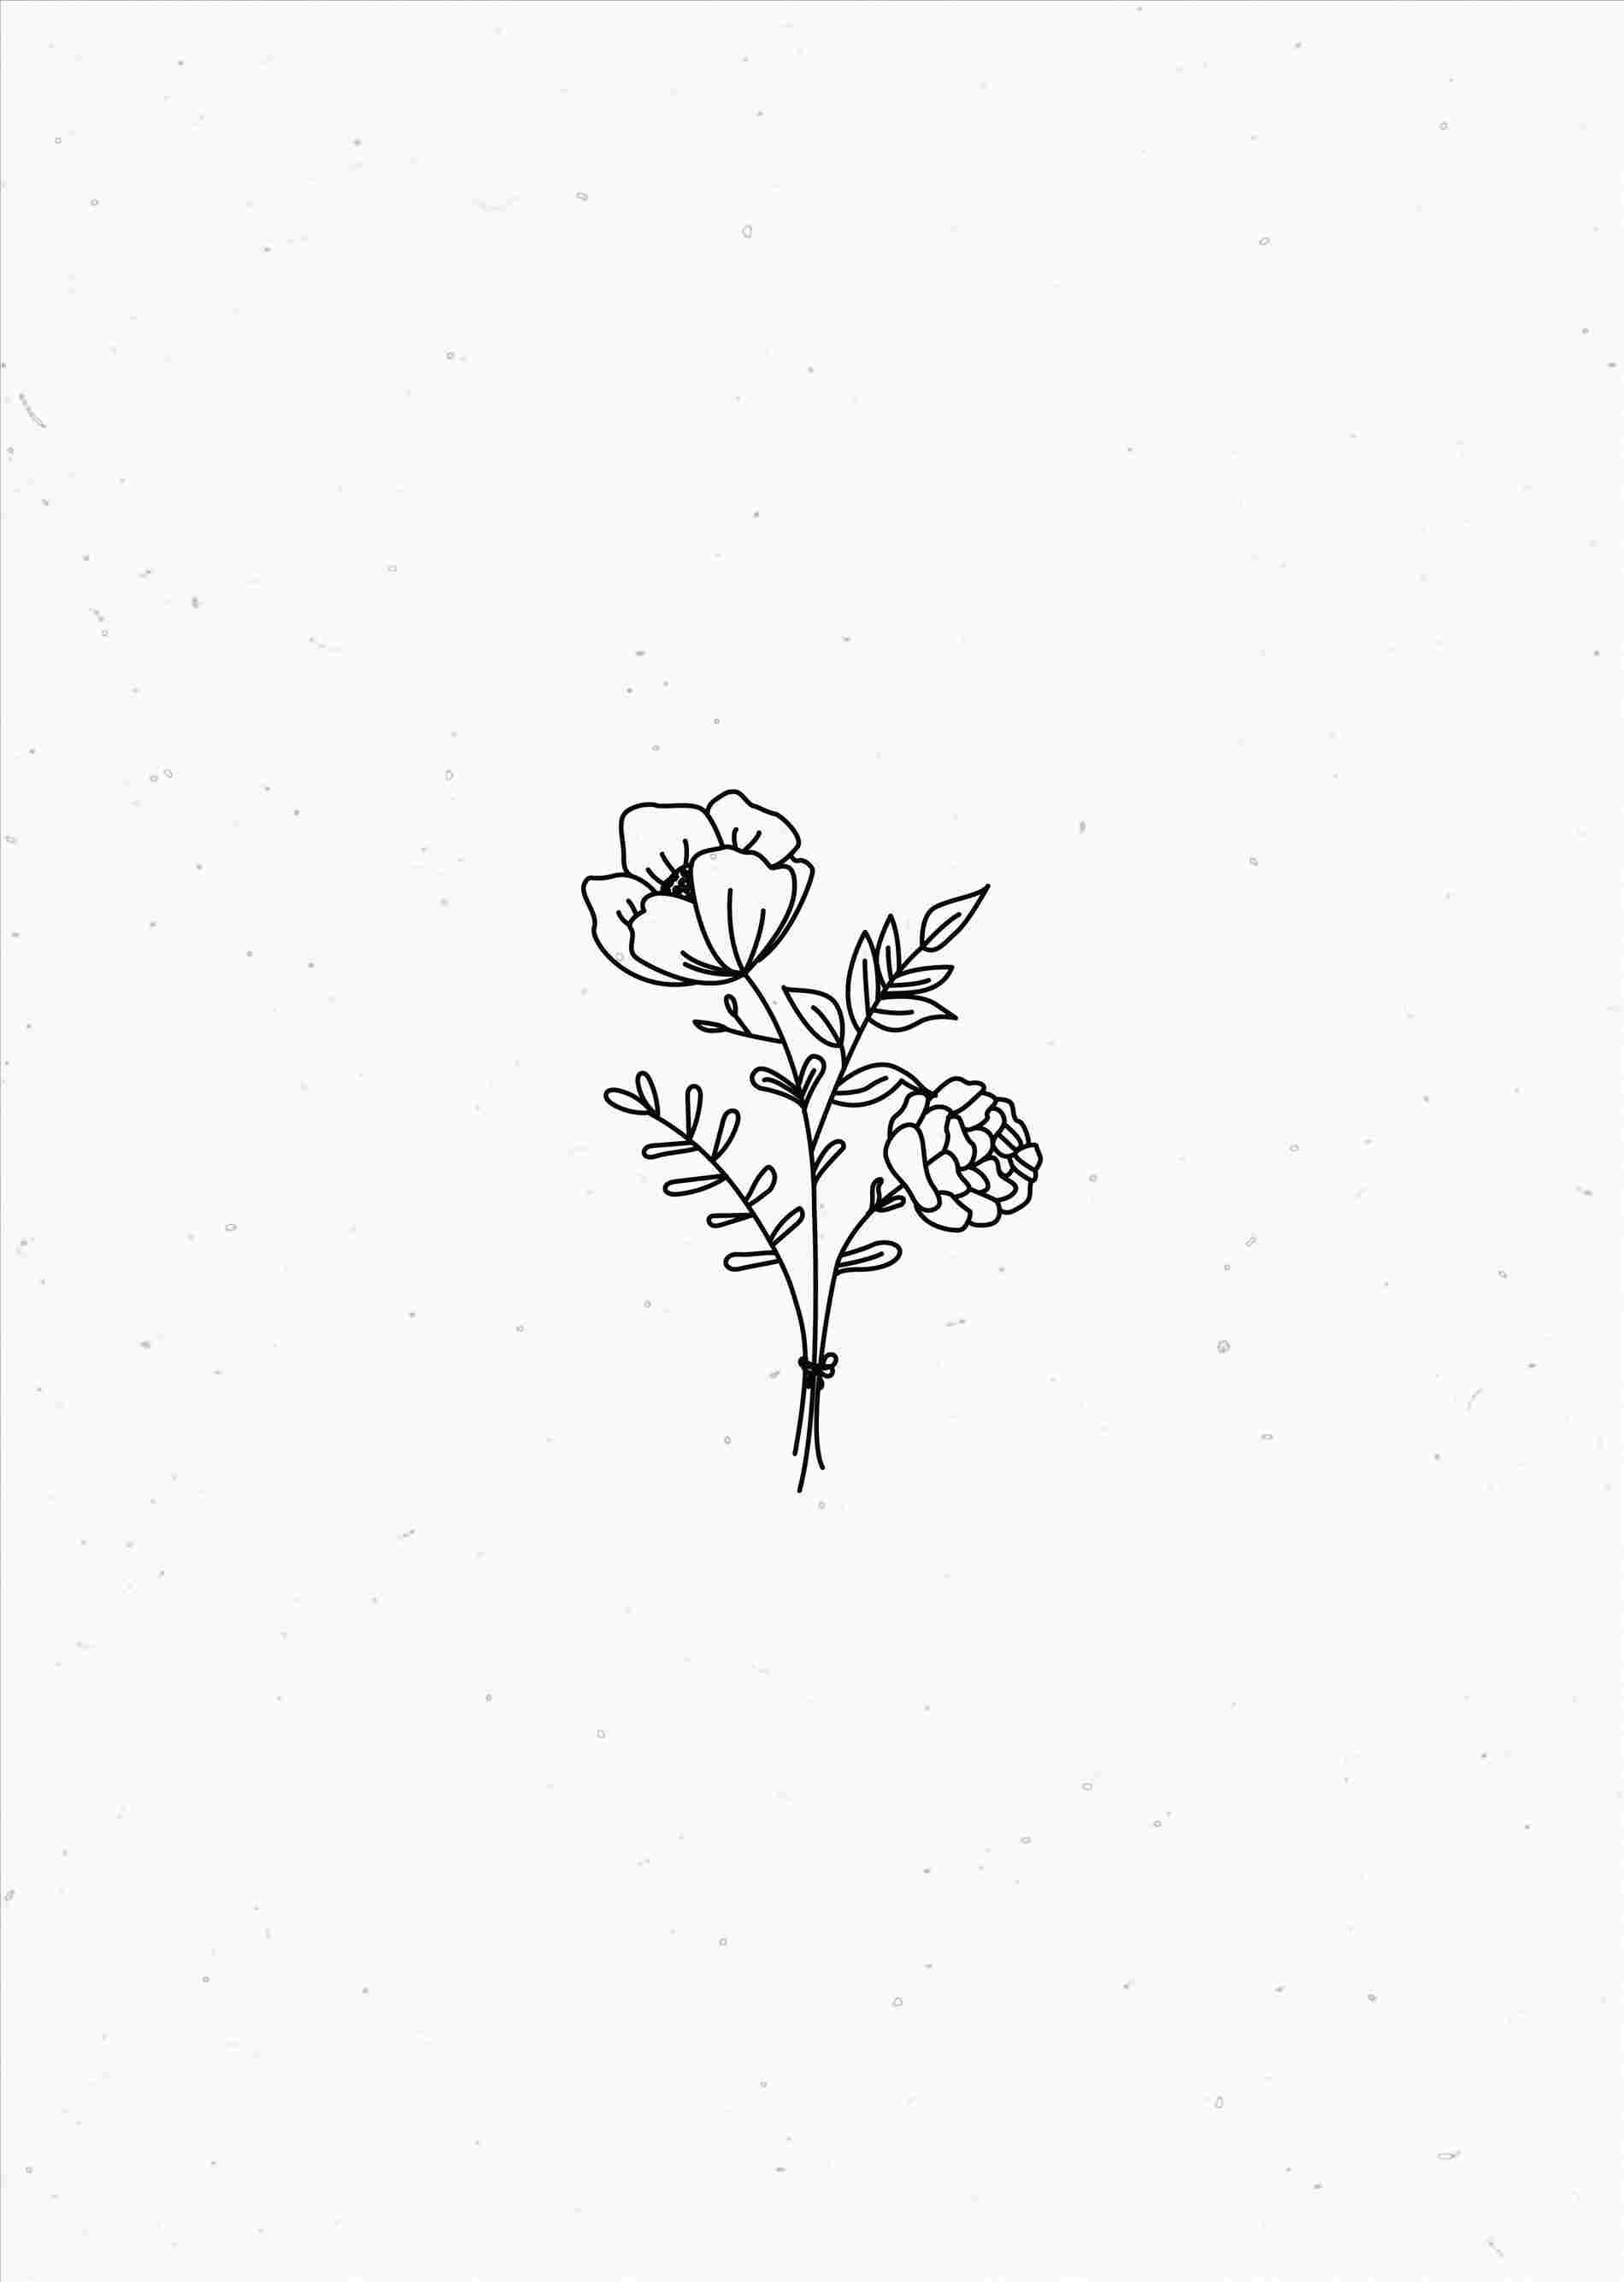 flower doodles aesthetic